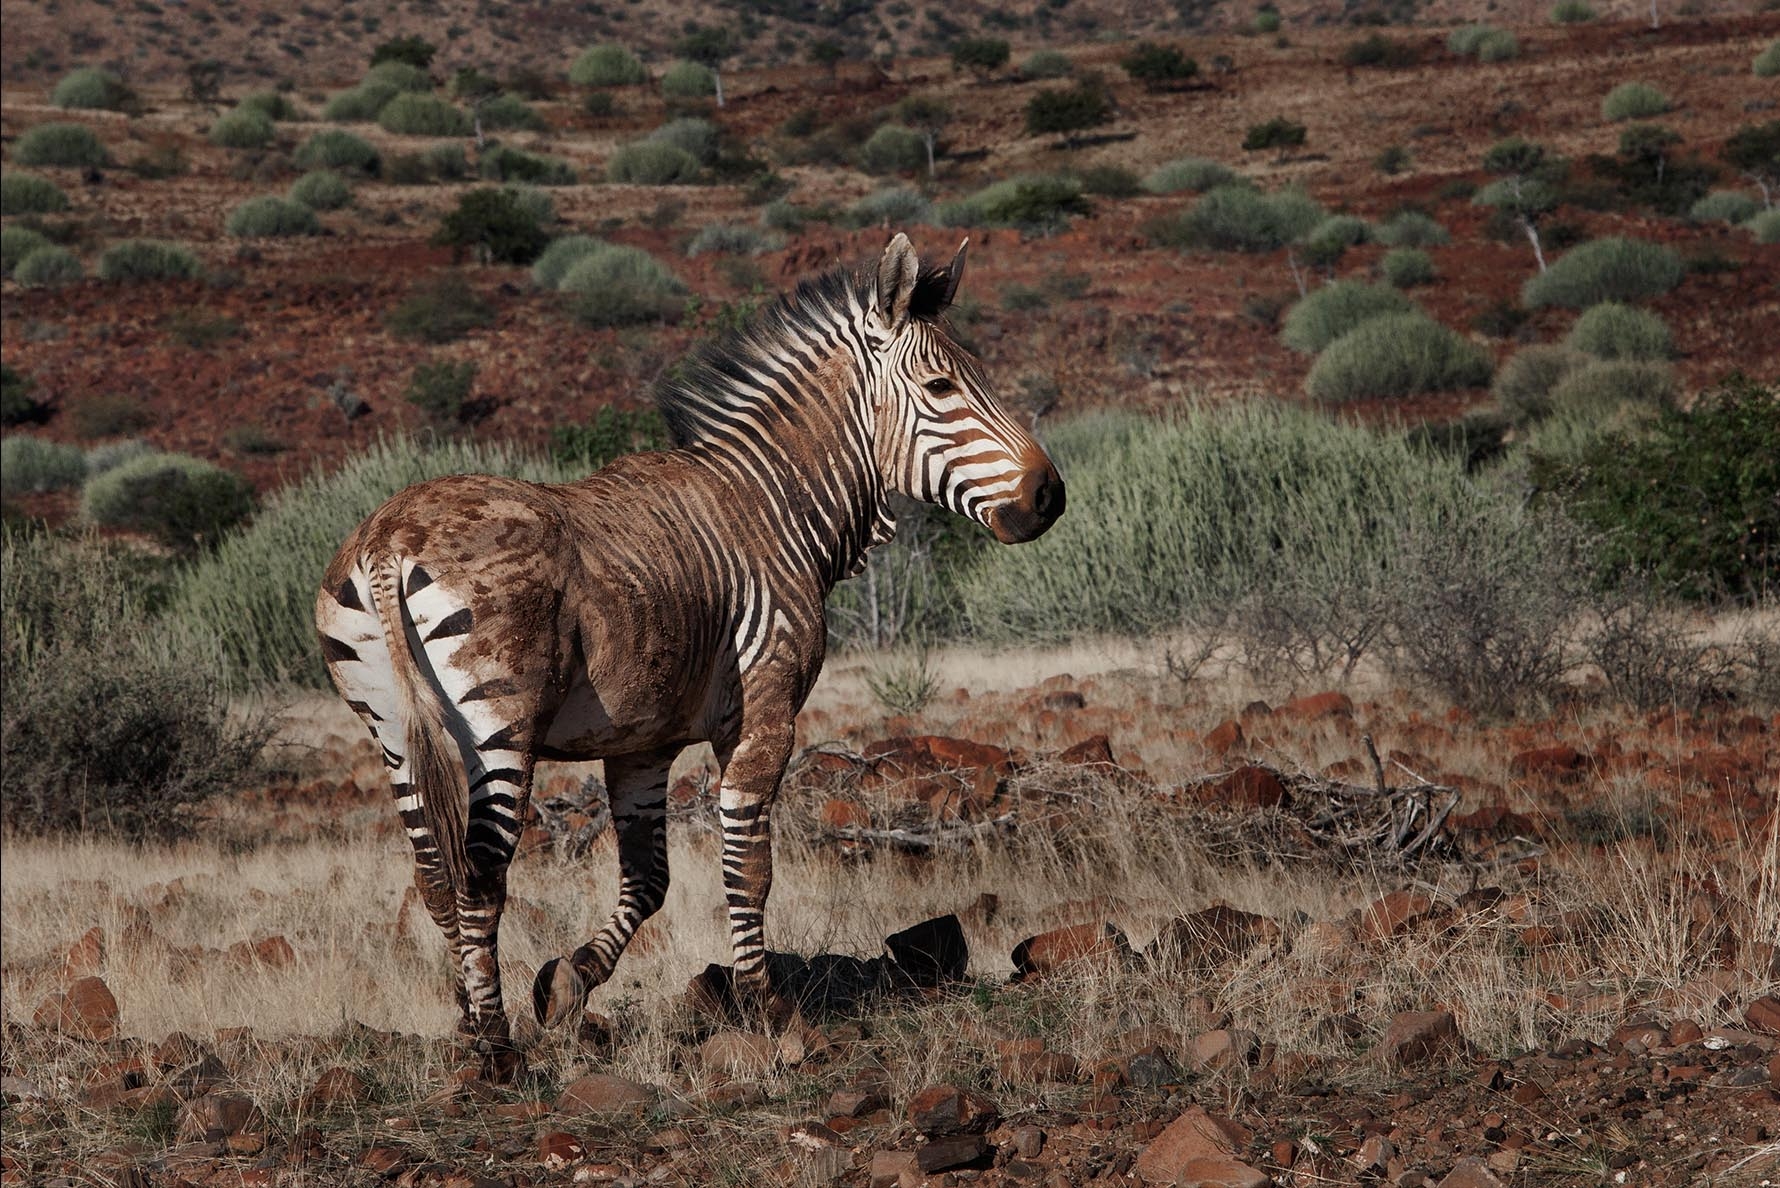 Mountain zebra in Etosha National Park, Namibia